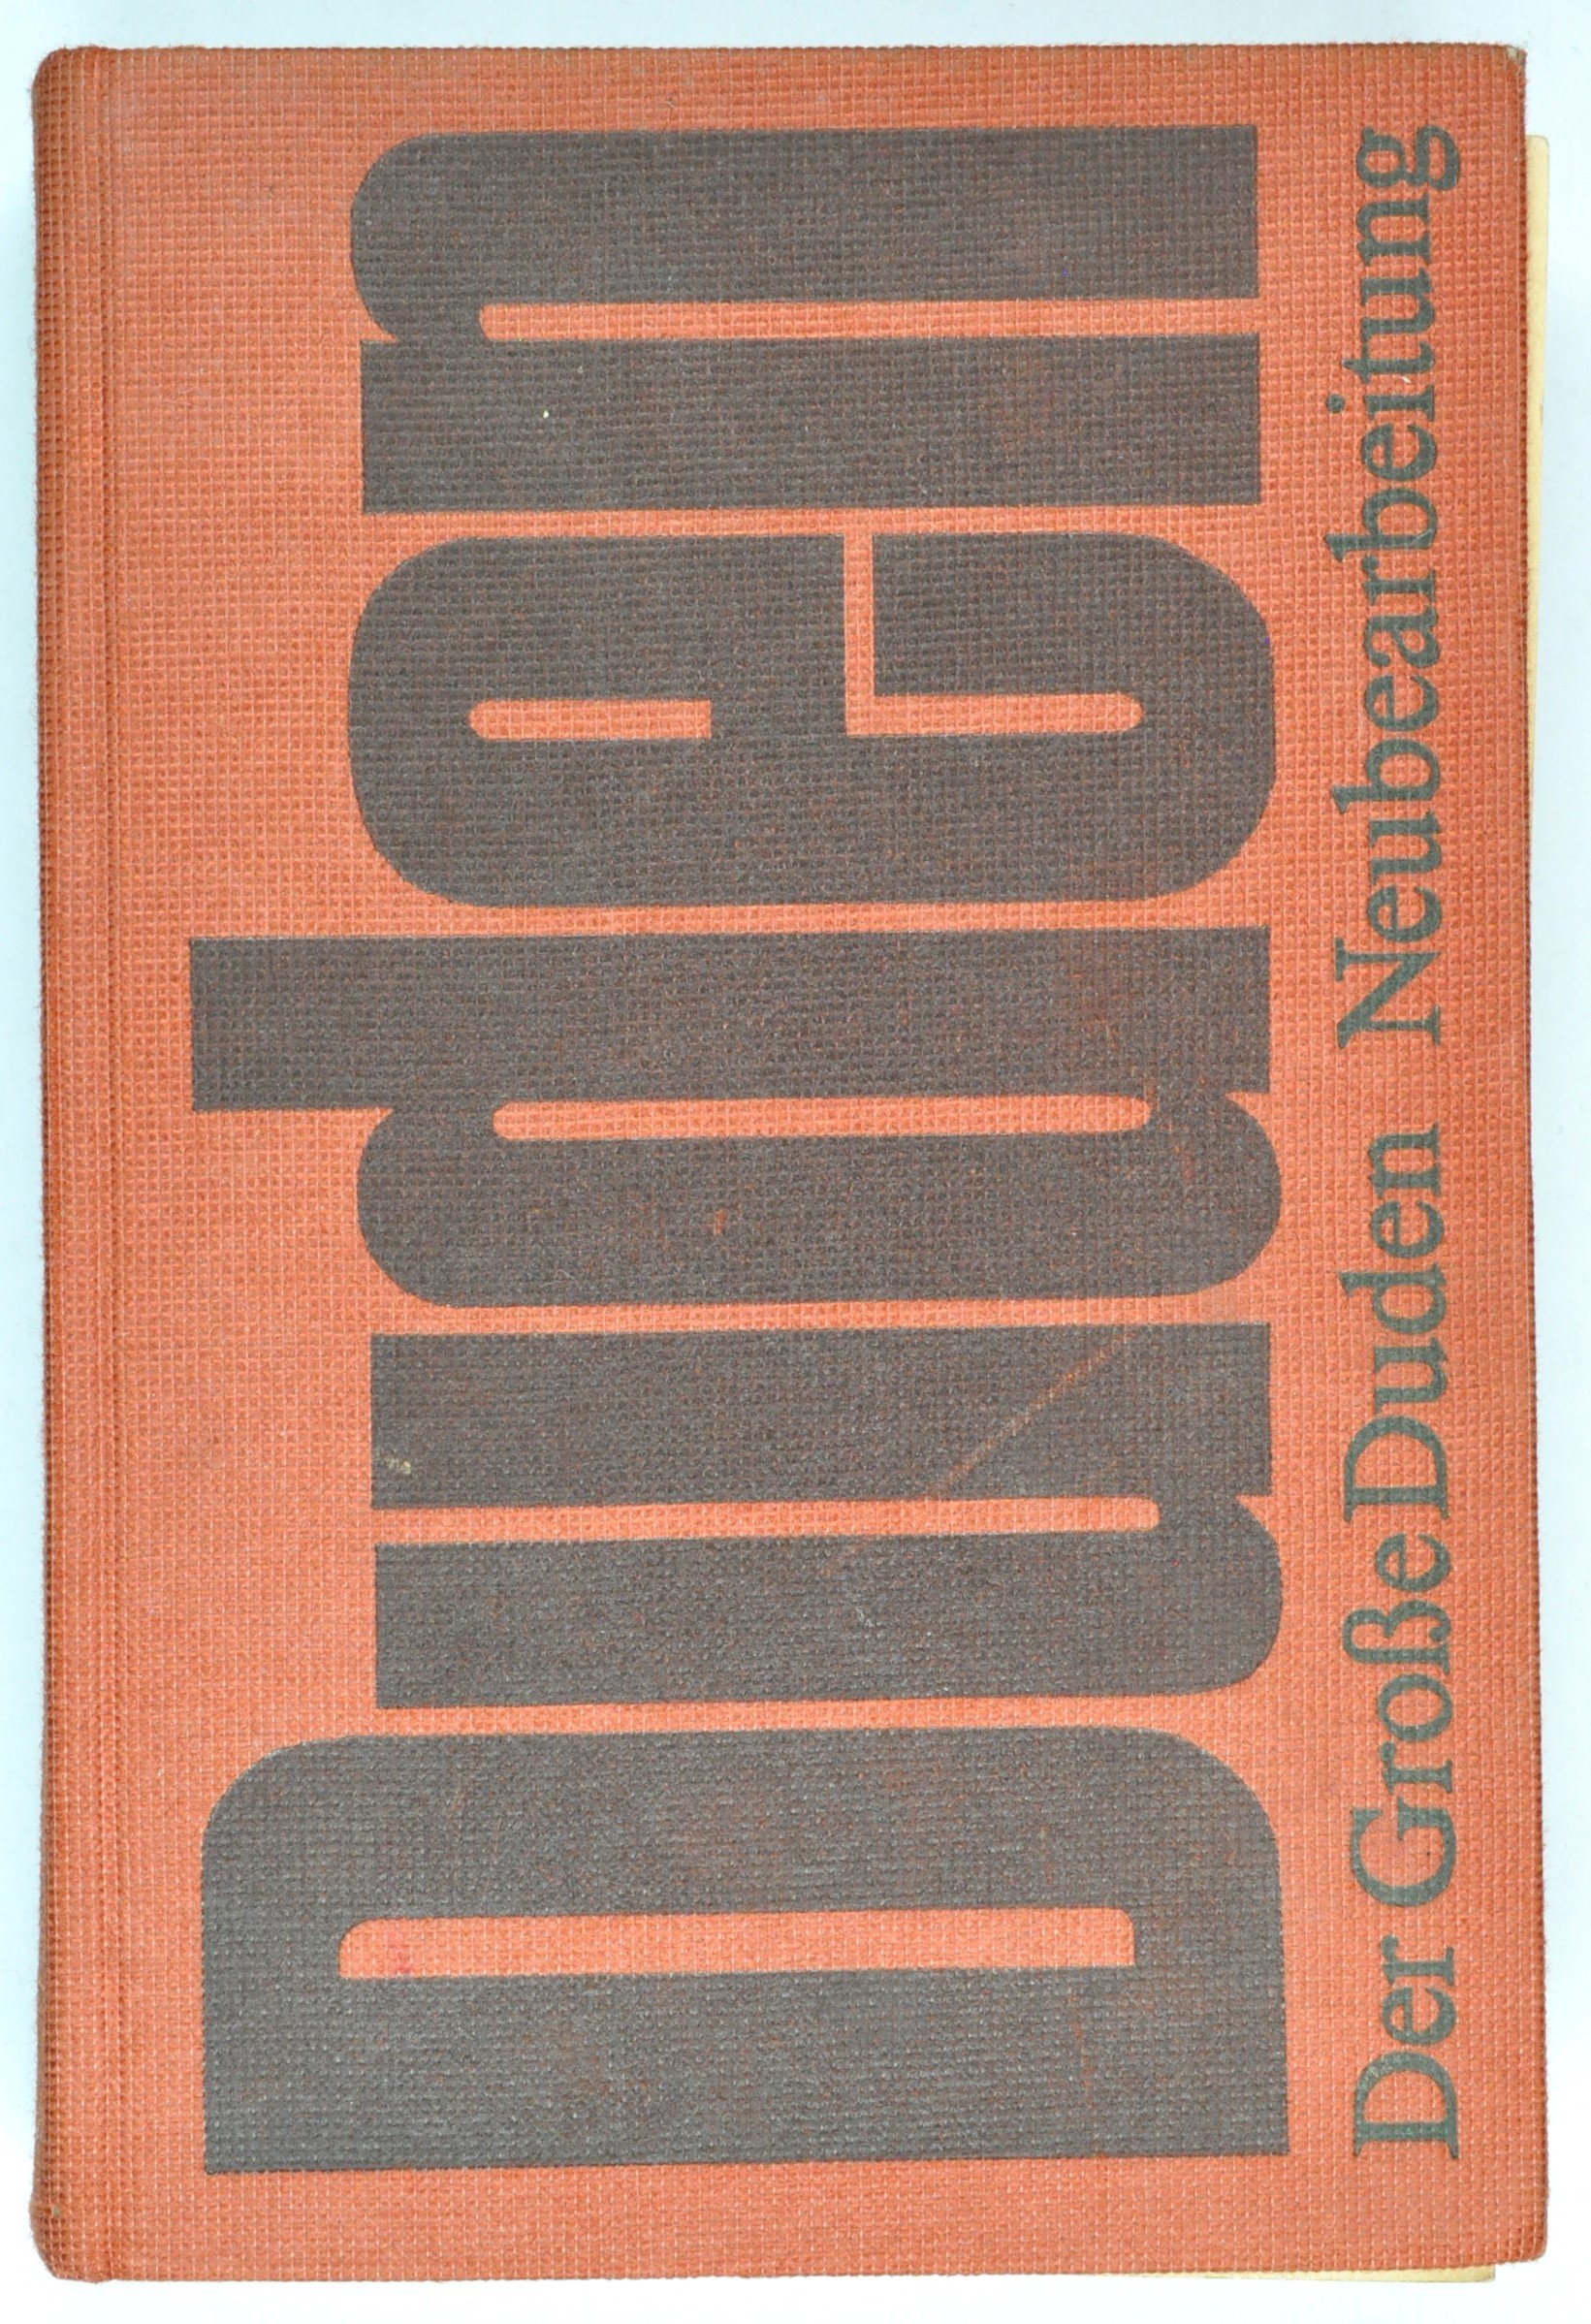 Buch: Der große Duden, 17., neu bearbeitete Auflage, Leipzig 1976 (DDR Geschichtsmuseum im Dokumentationszentrum Perleberg CC BY-SA)